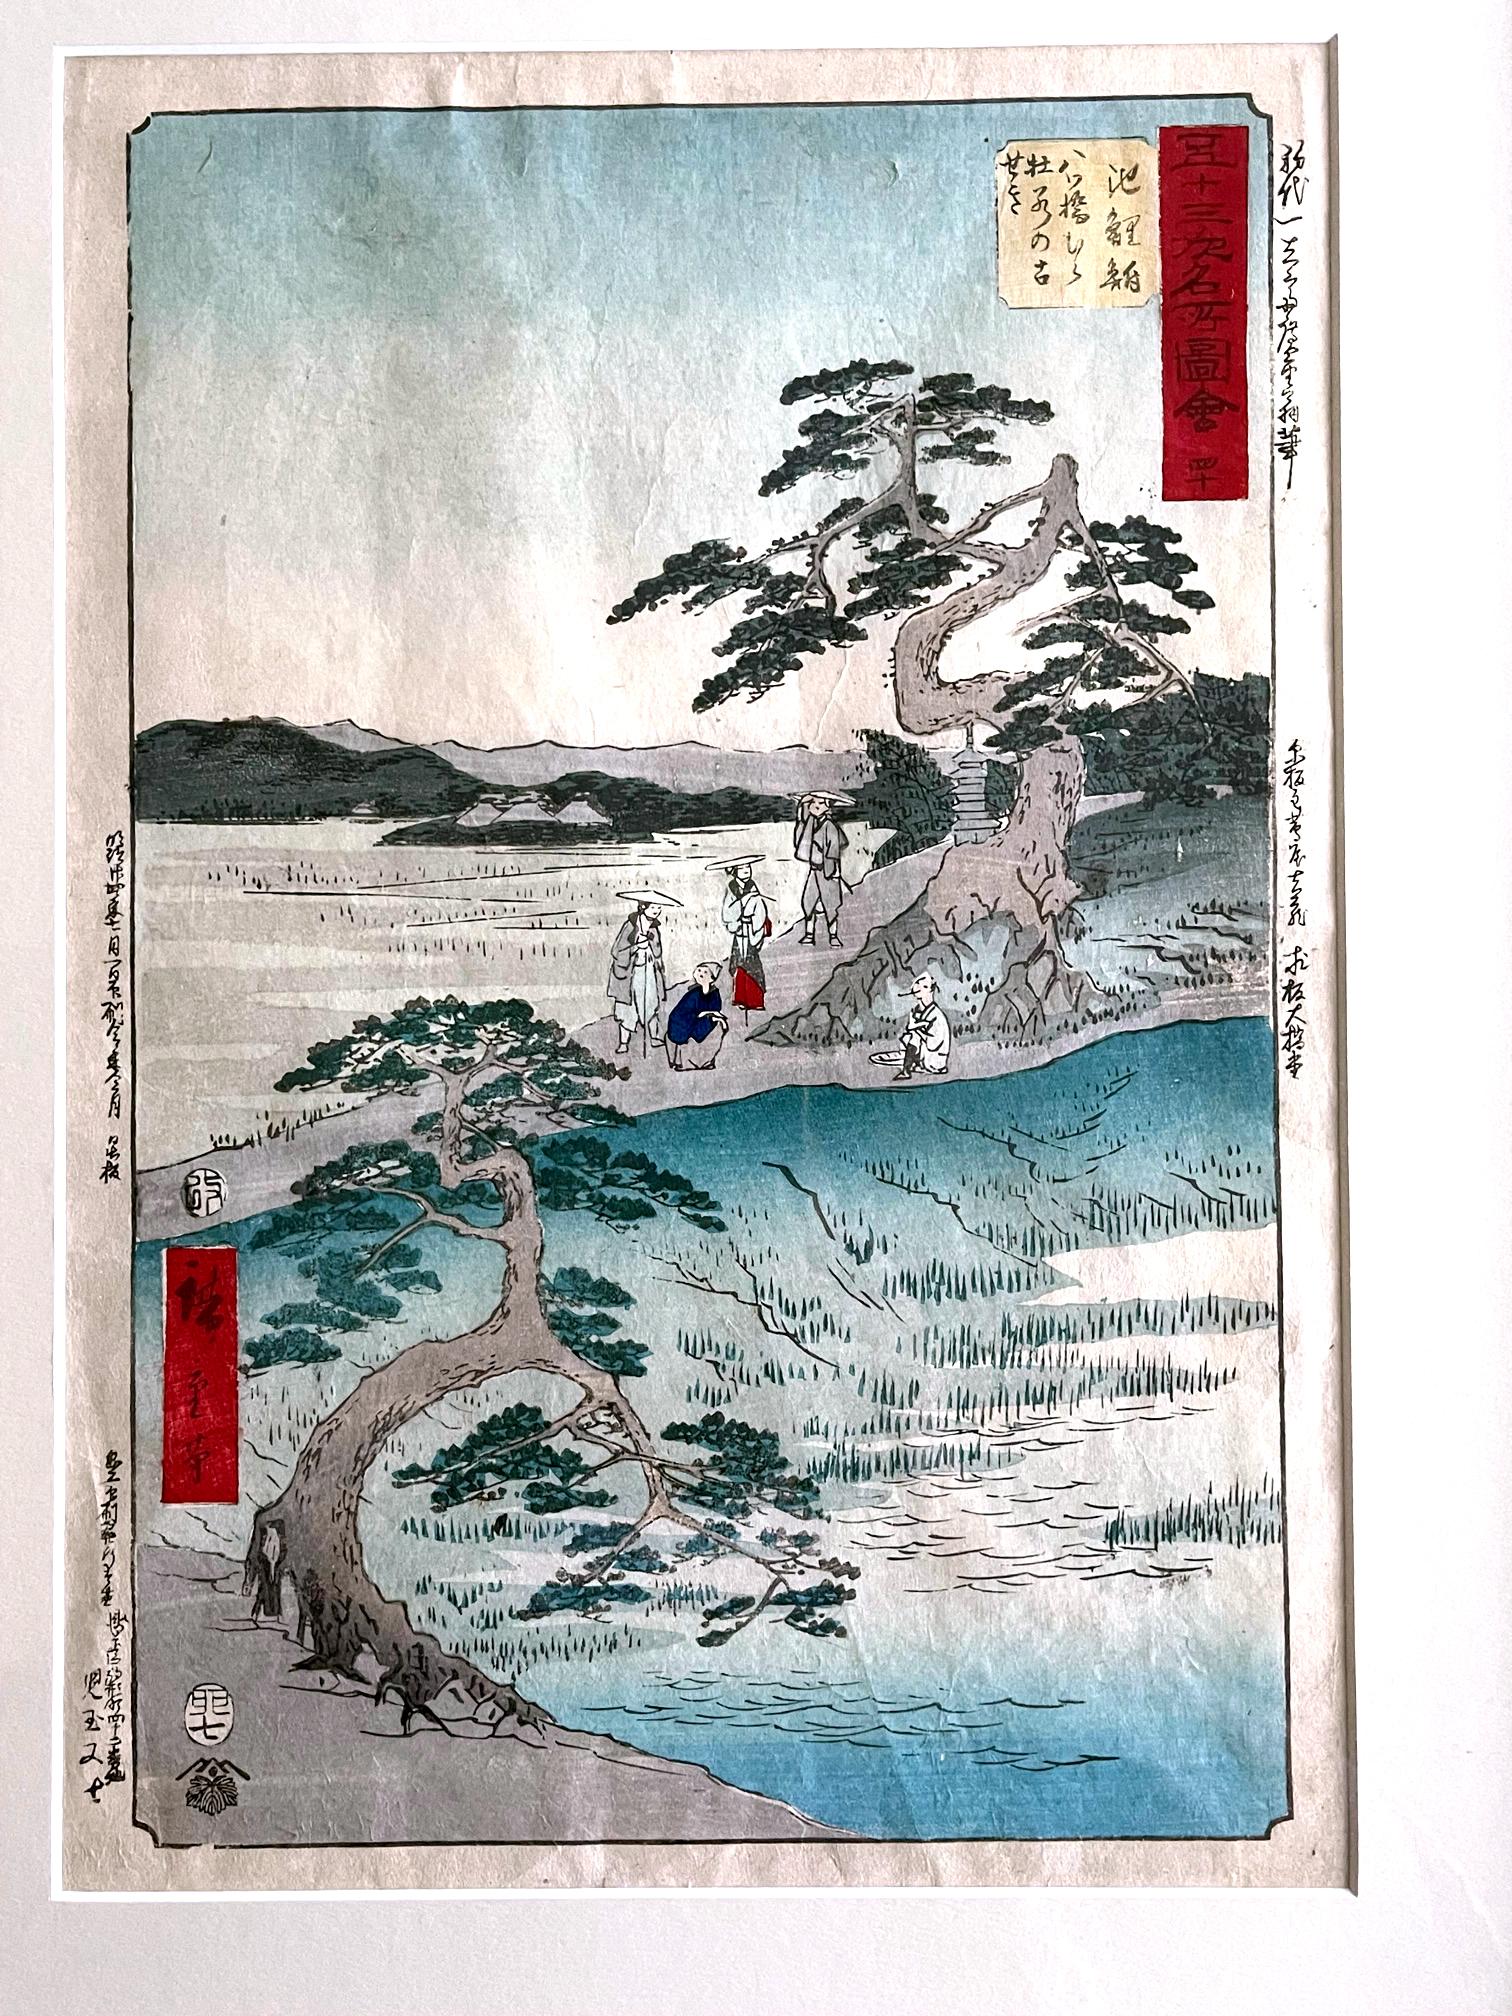 Künstler: Utagawa Hiroshige (1797 - 1858)
Serie: Die dreiundfünfzig Stationen des Tokaido (aufrecht)
Nummer: 40 Chiryū: Der ehemalige Standort der Schwertlilien in Eightbridge Village
(Chiryū, Yatsuhashimura kakitsubata no koseki)
Medium: